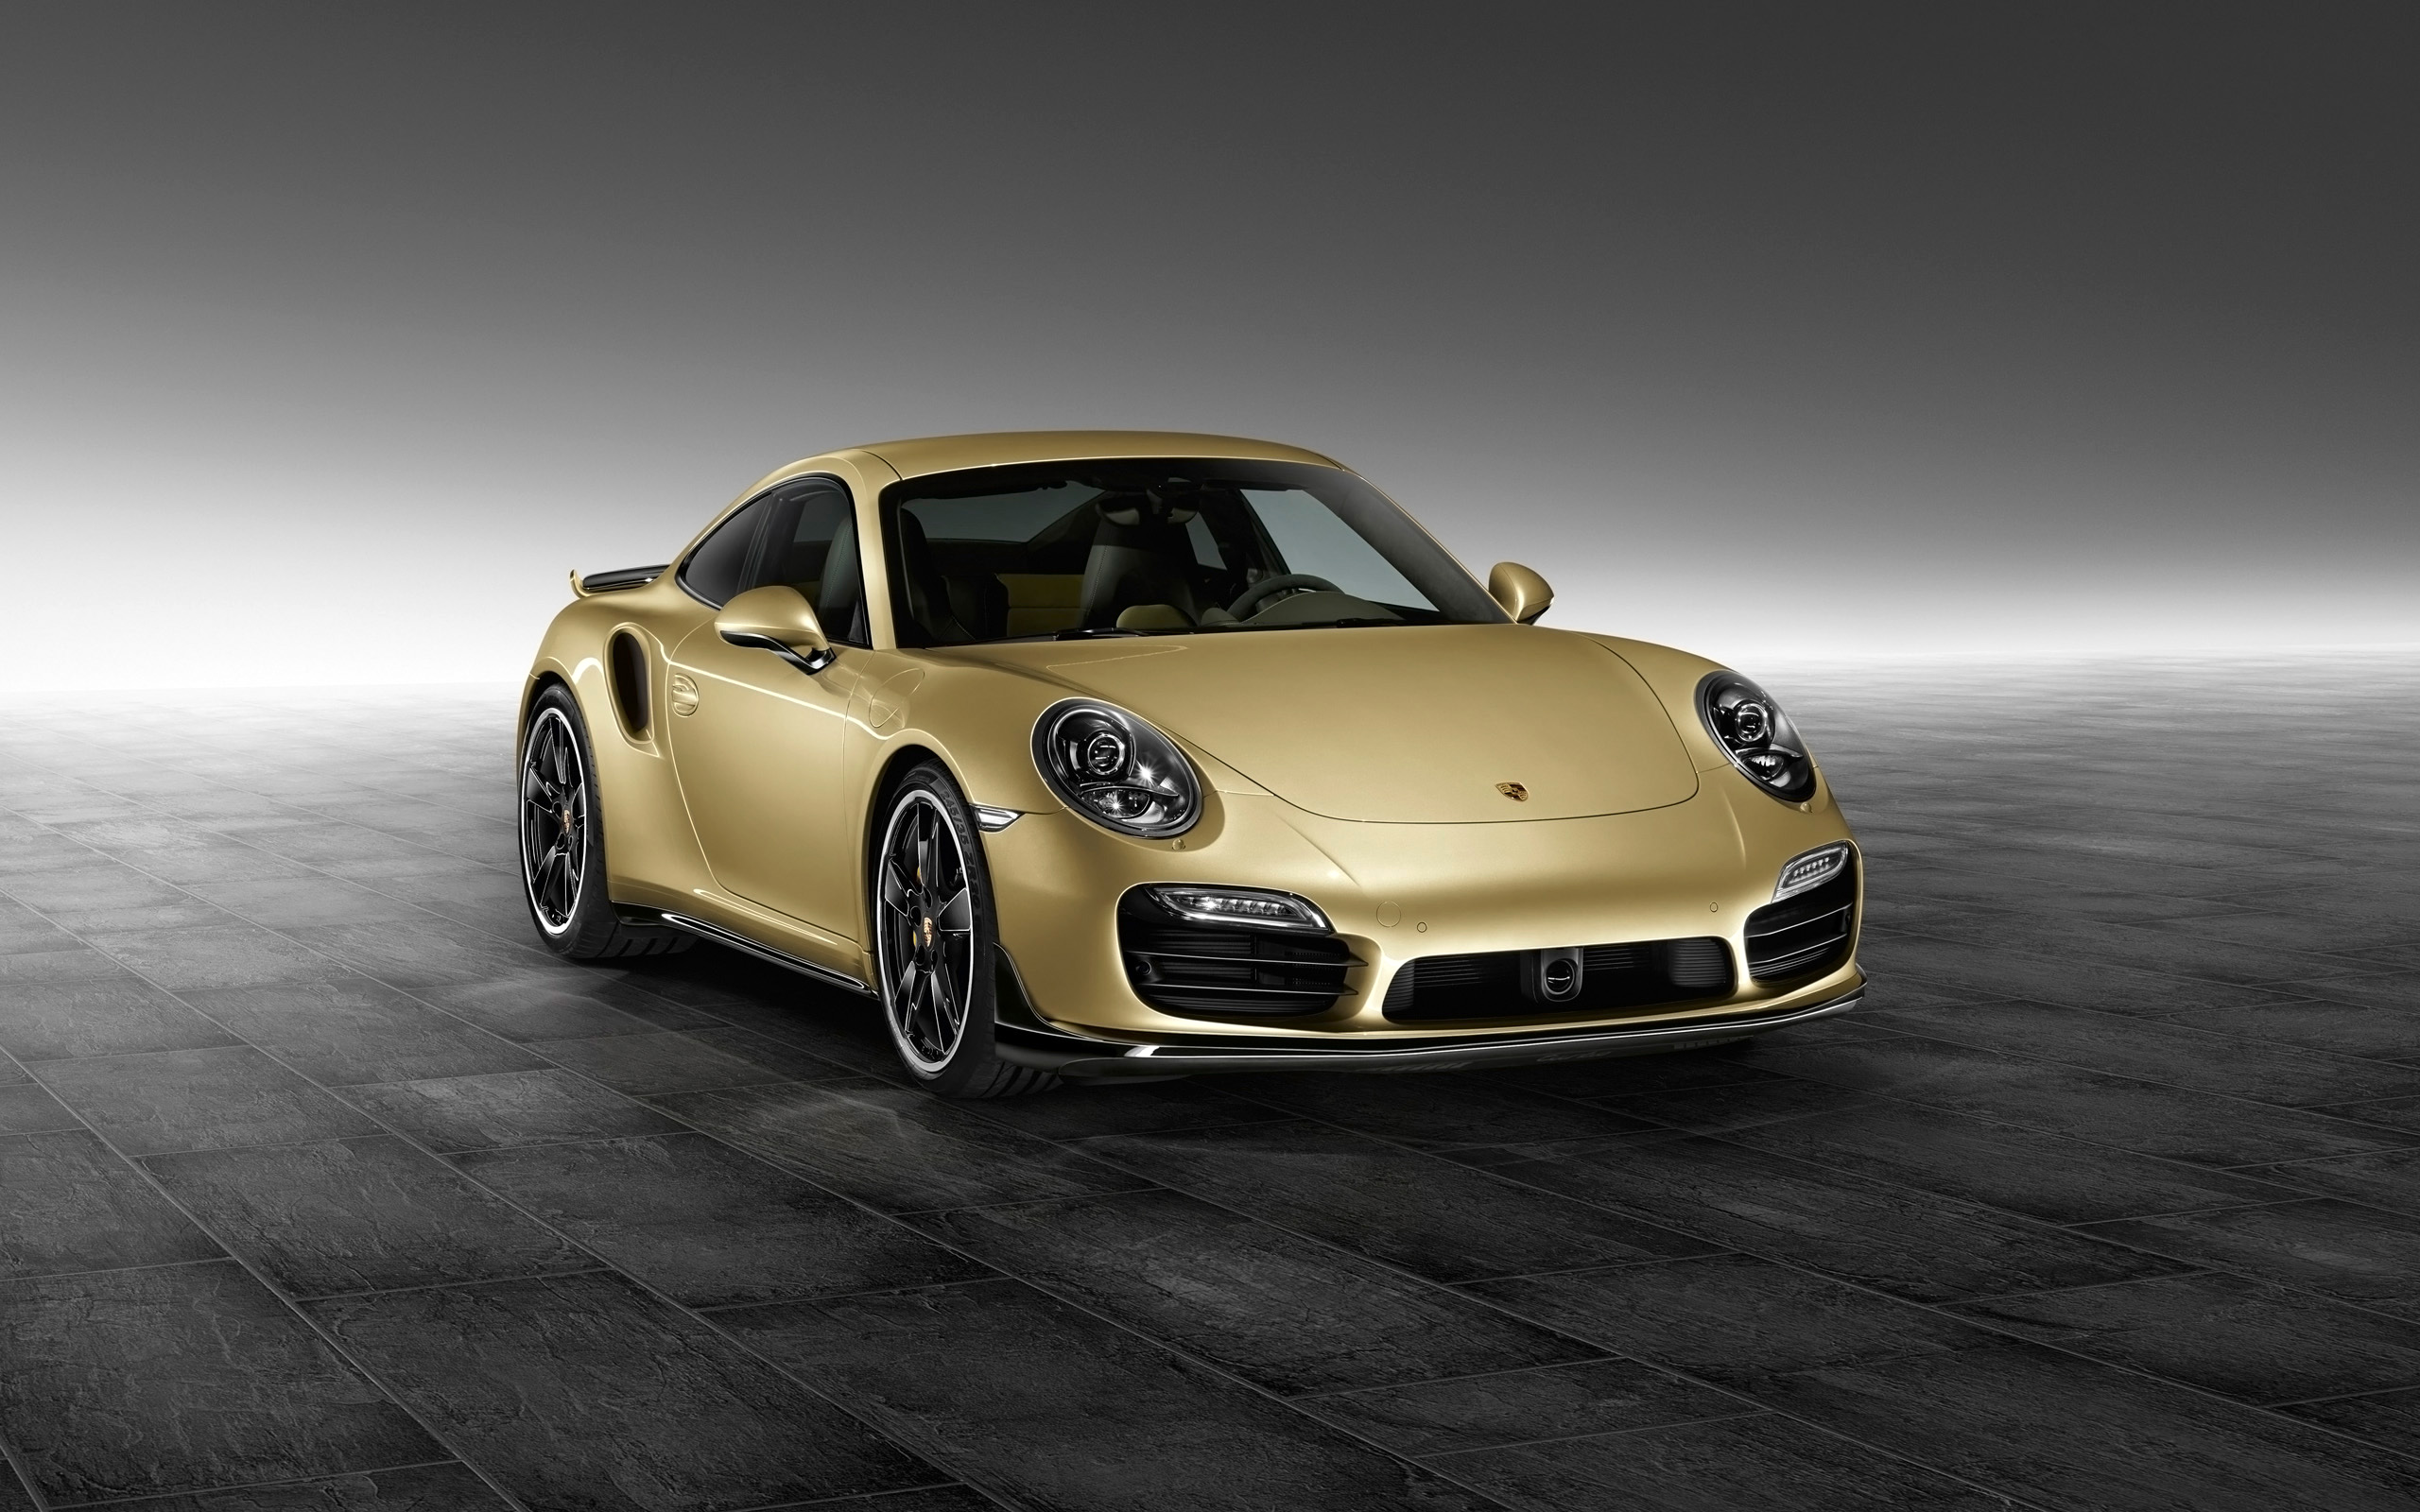 Descarga gratuita de fondo de pantalla para móvil de Porsche 911 Turbo, Porsche 911, Porsche, Vehículos.